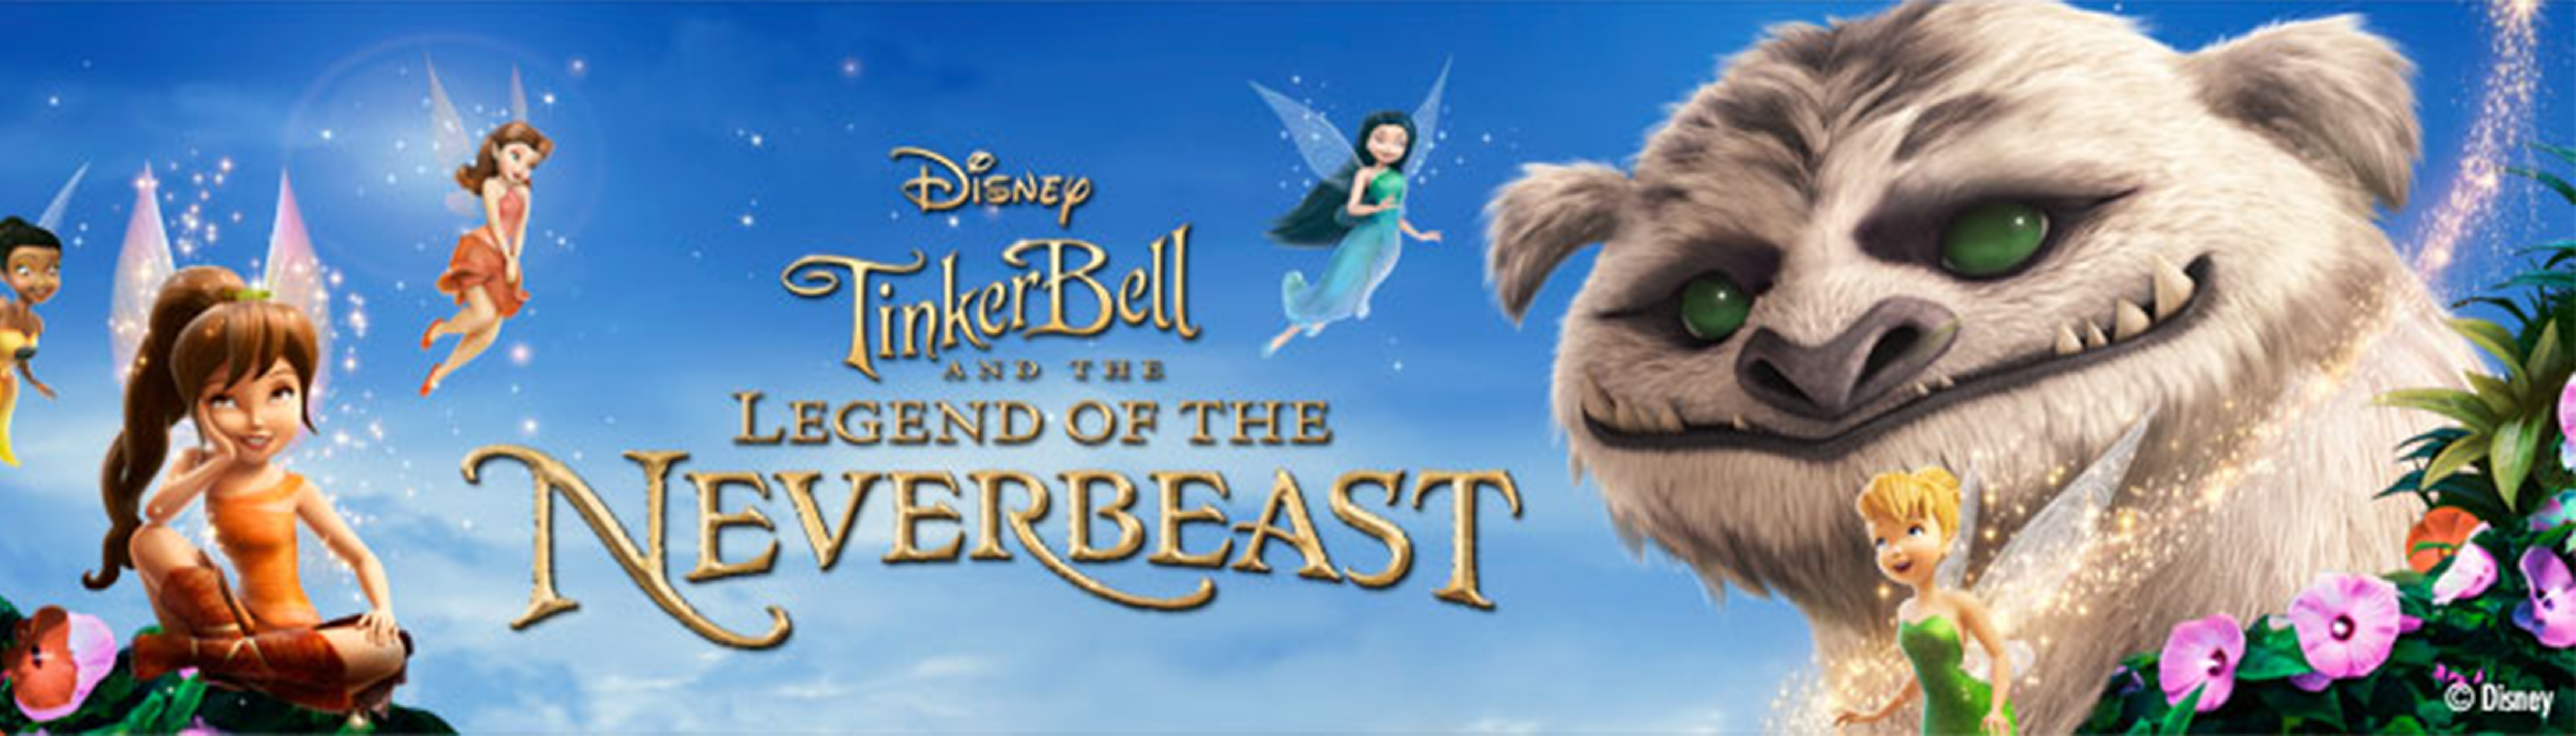 دانلود انیمیشن کارتونی Tinker Bell the Legend of the Neverbeast